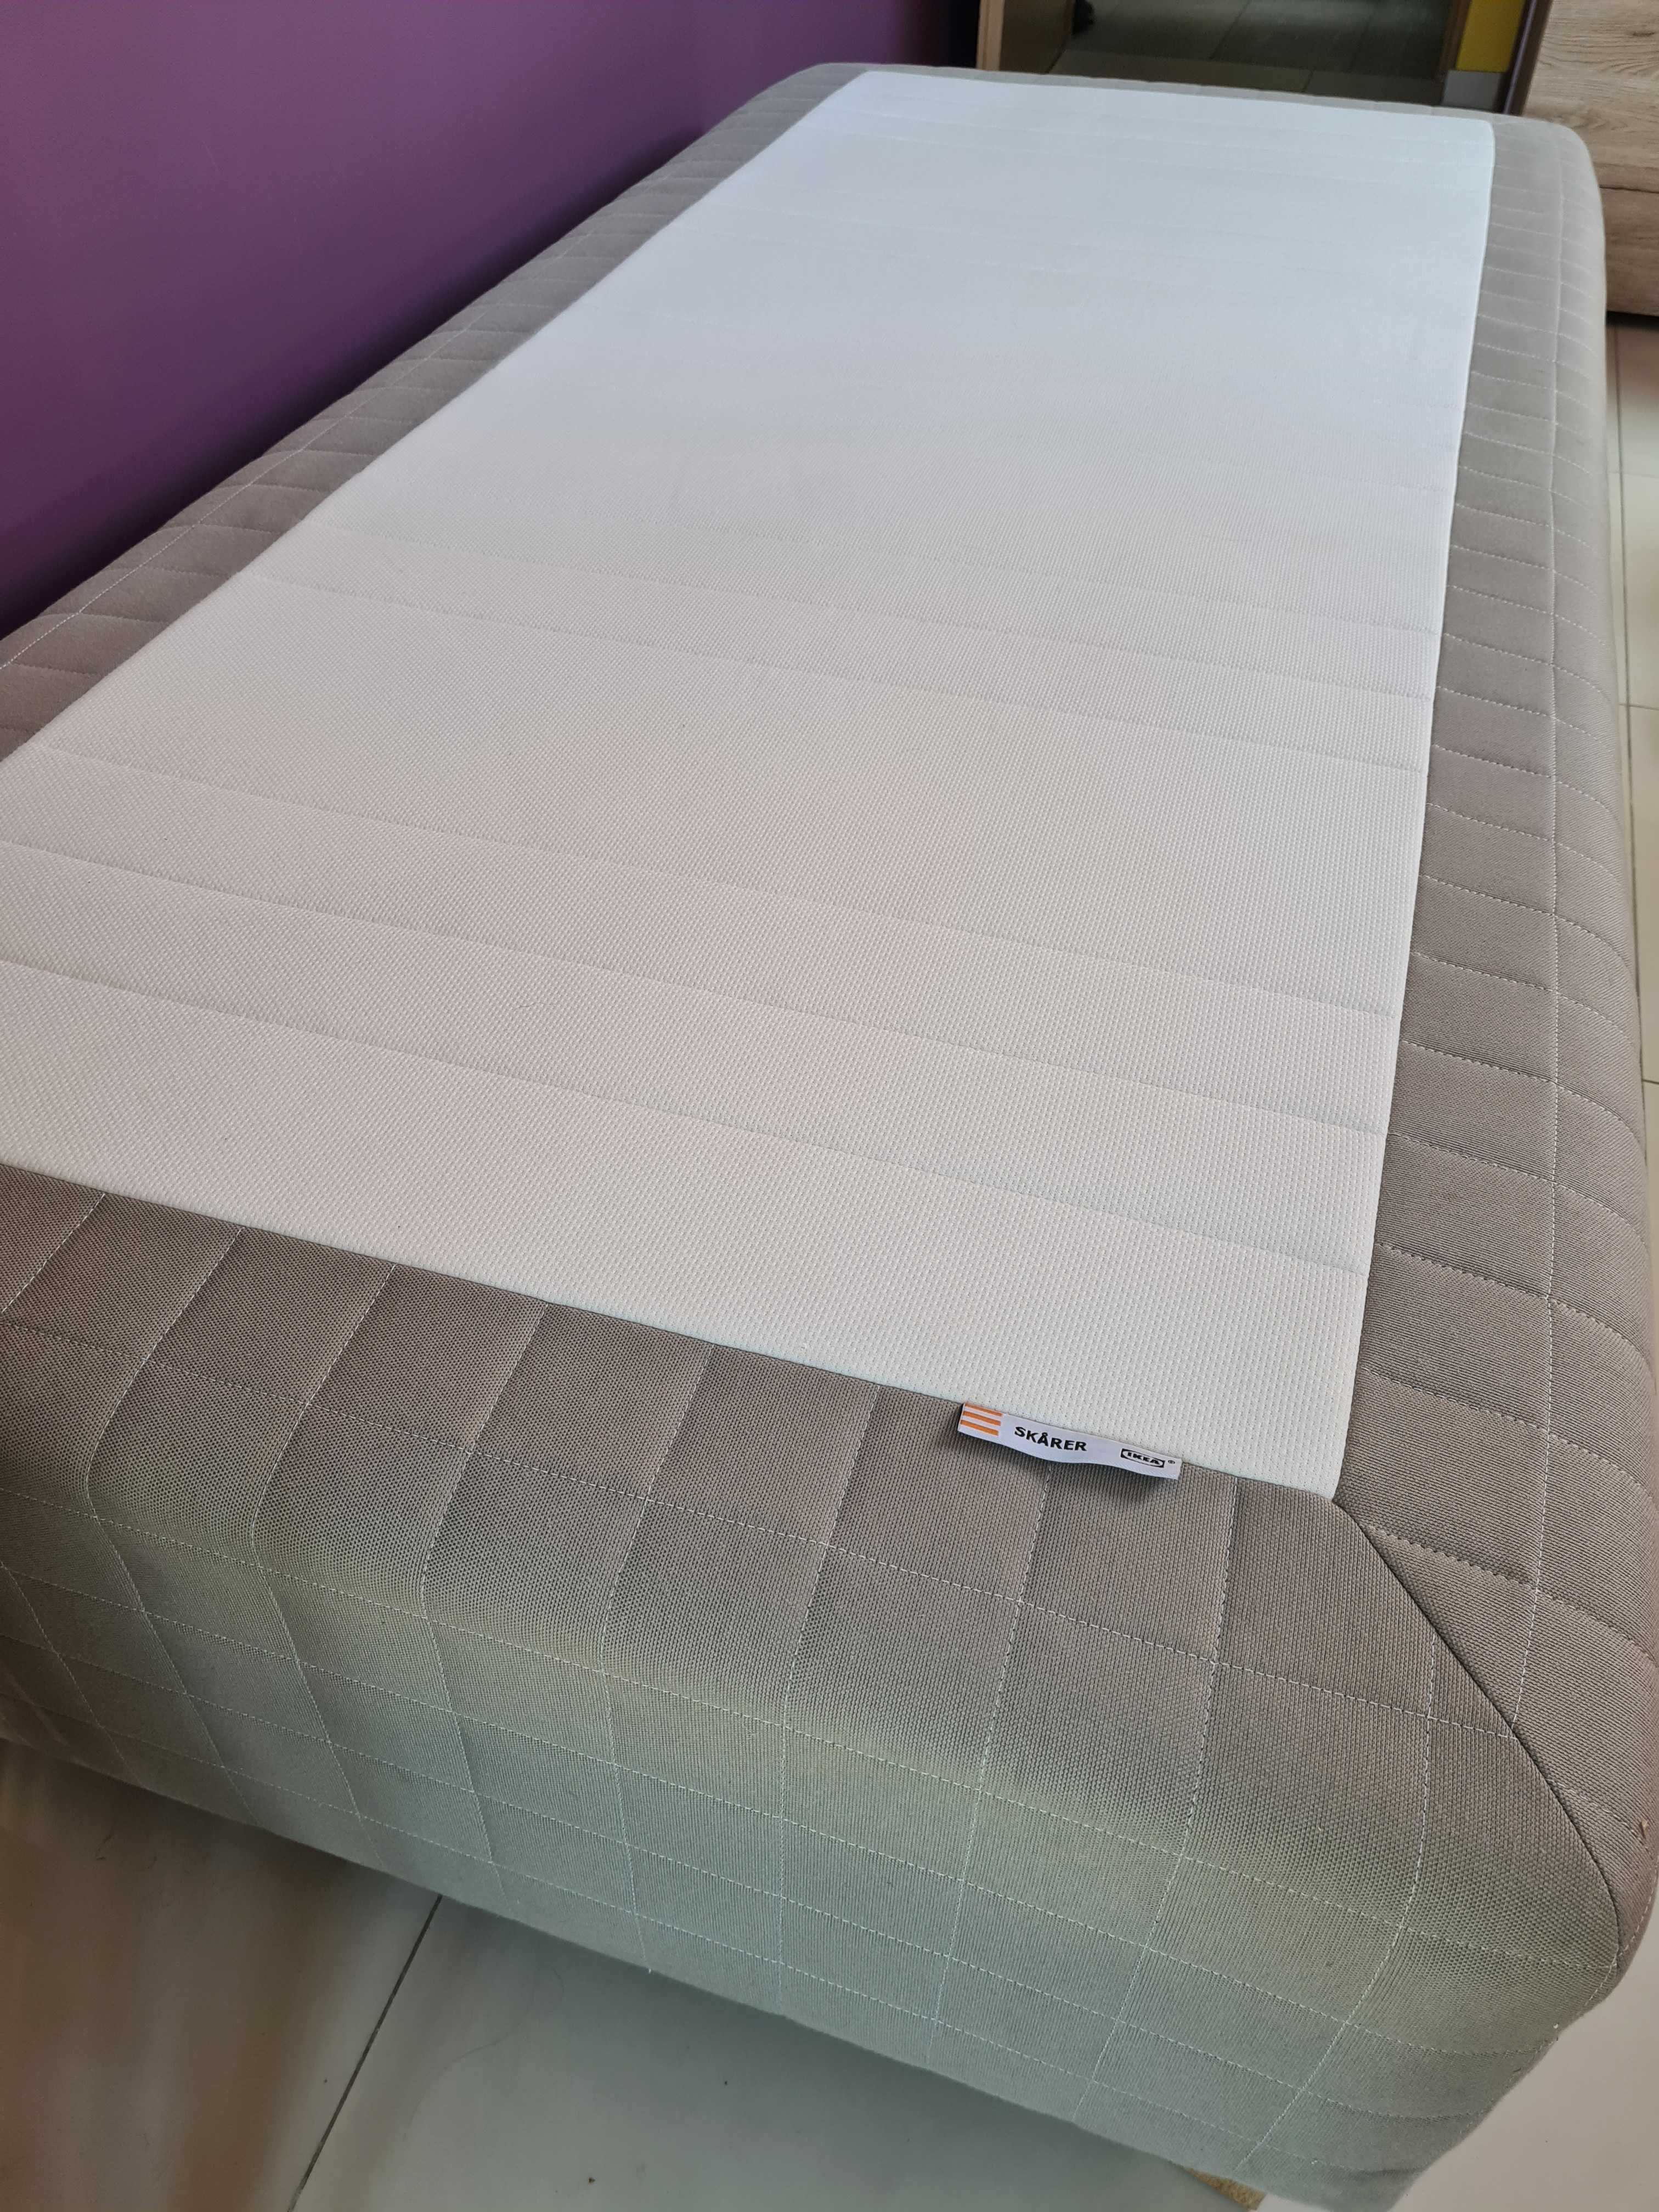 Łóżko Skårer Ikea w bardzo dobrym stanie